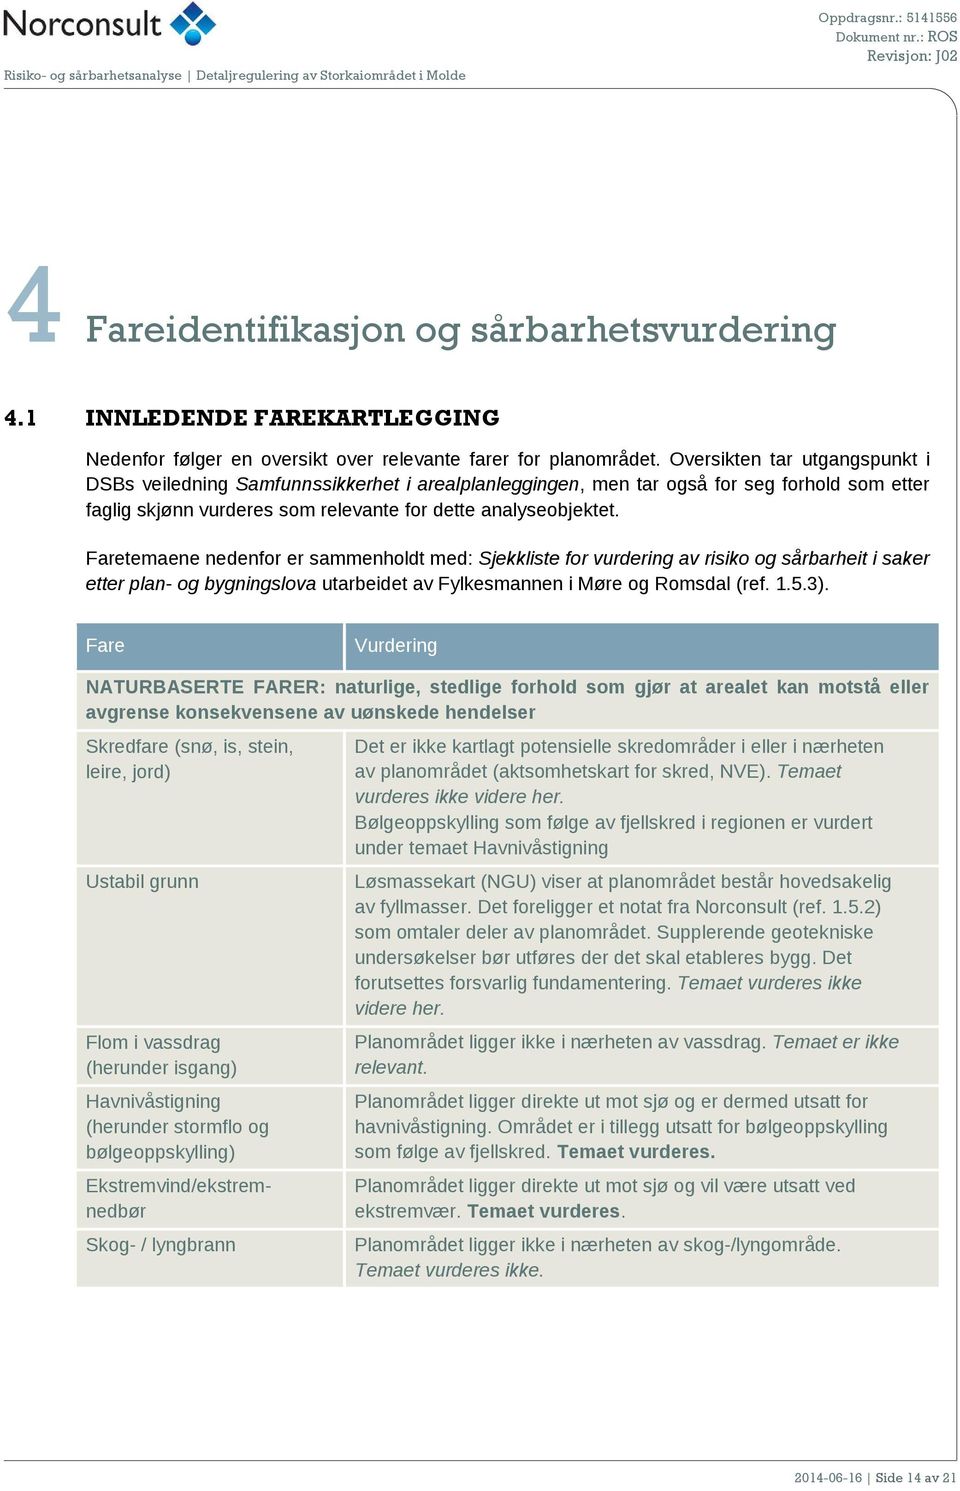 Faretemaene nedenfor er sammenholdt med: Sjekkliste for vurdering av risiko og sårbarheit i saker etter plan- og bygningslova utarbeidet av Fylkesmannen i Møre og Romsdal (ref. 1.5.3).